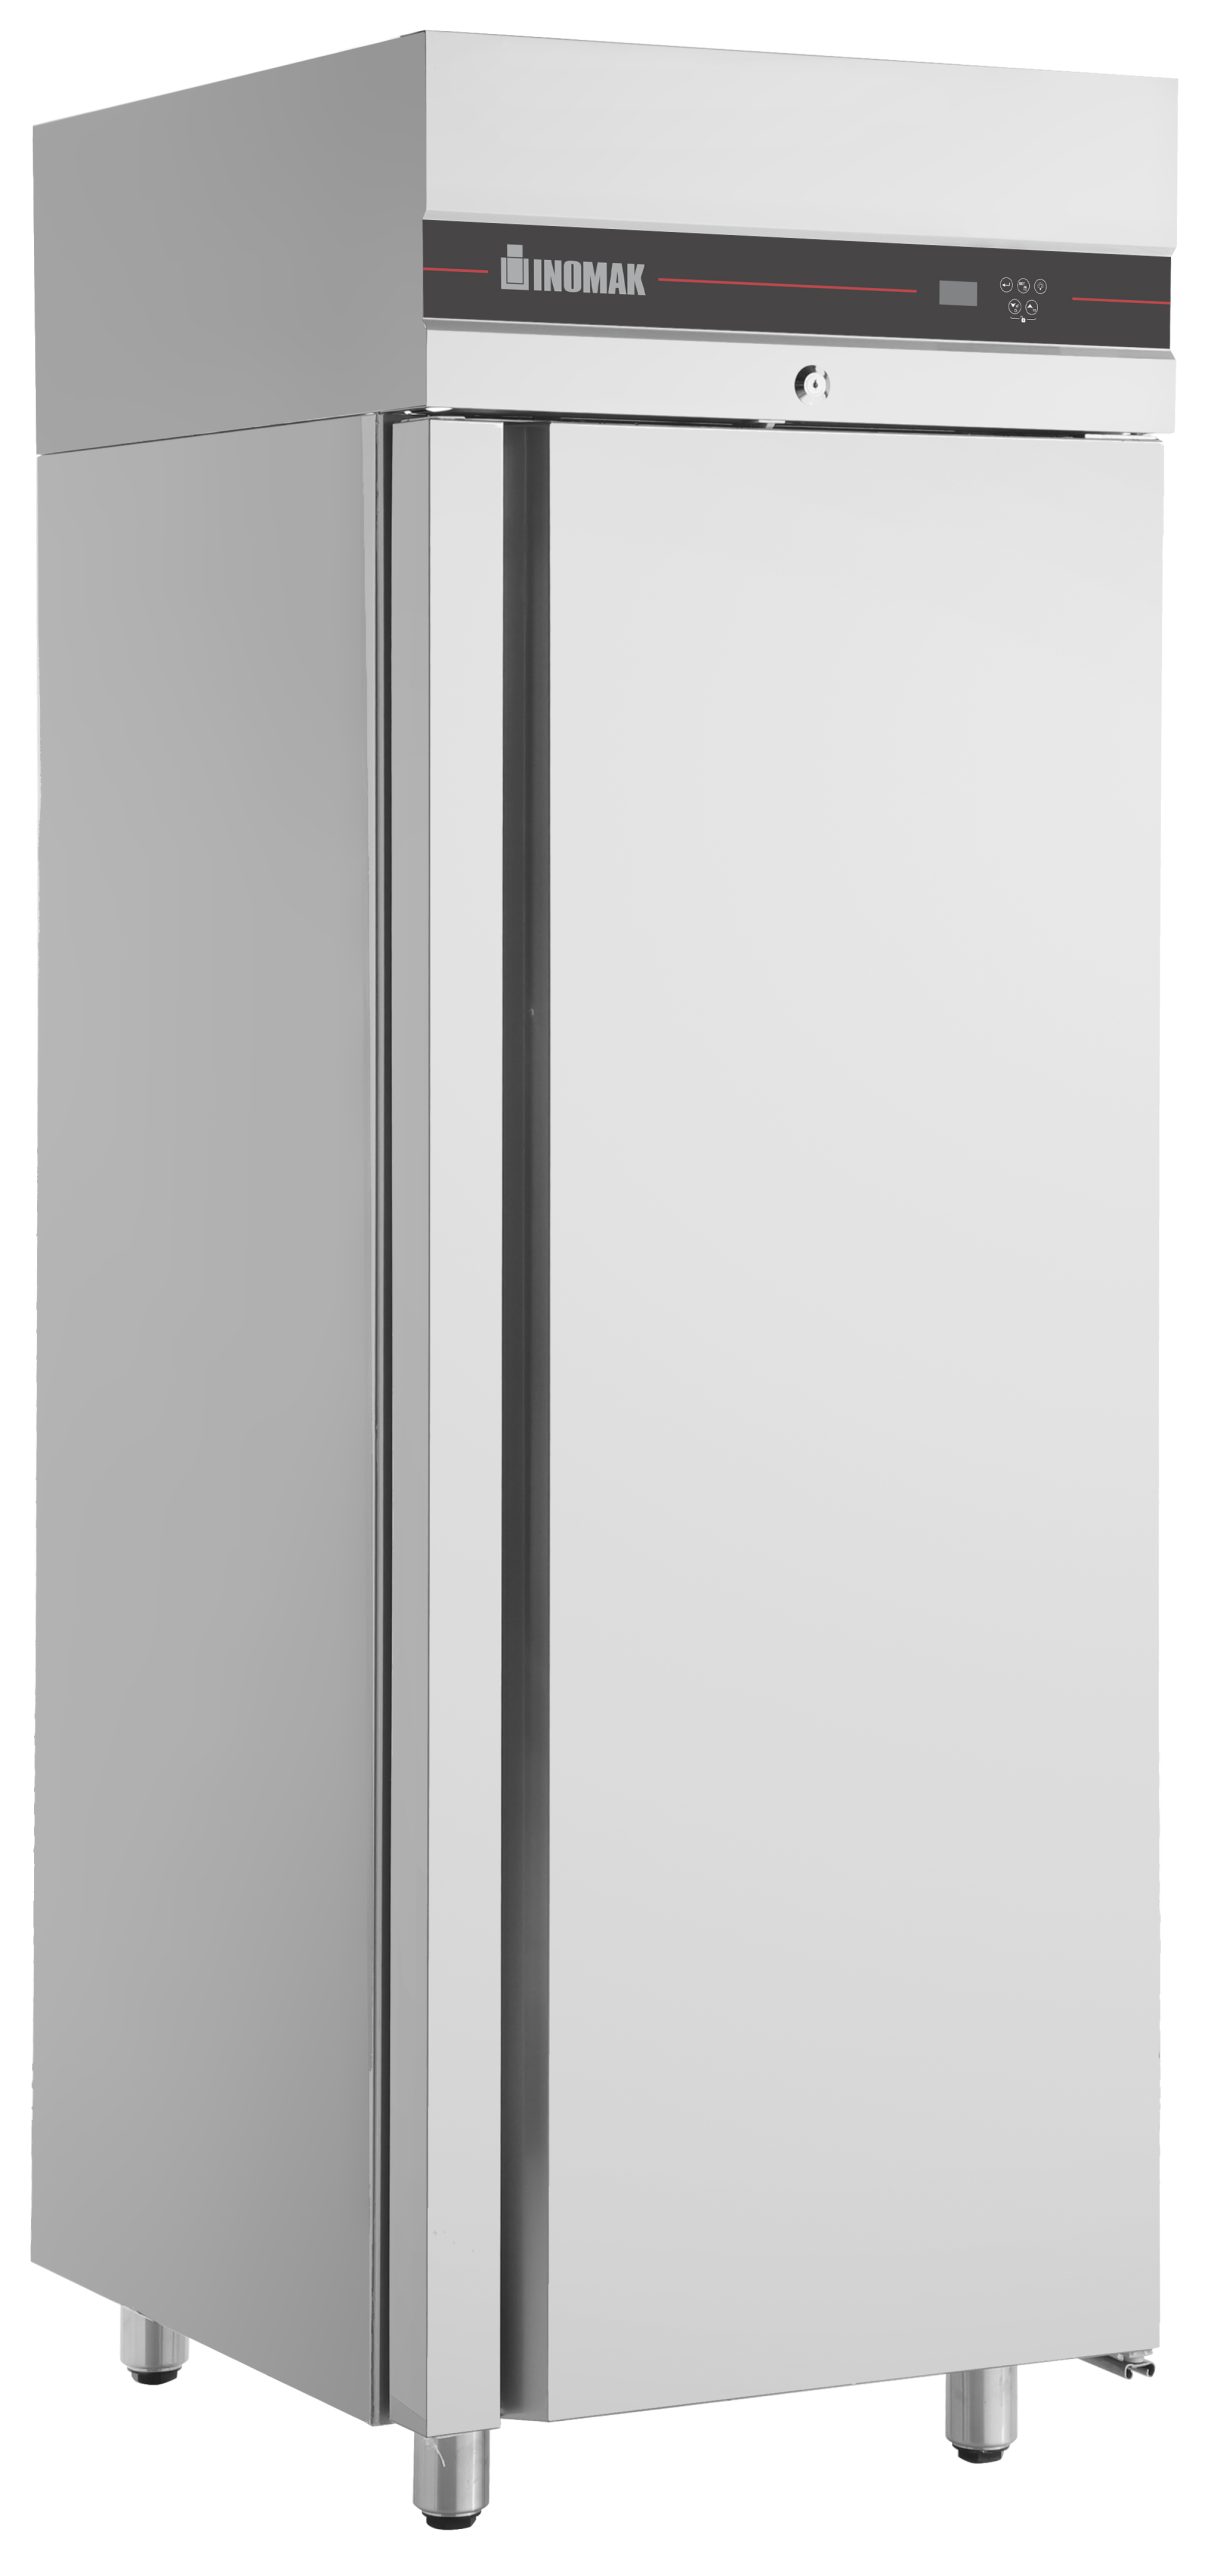 Inomak Single Door Upright Freezer